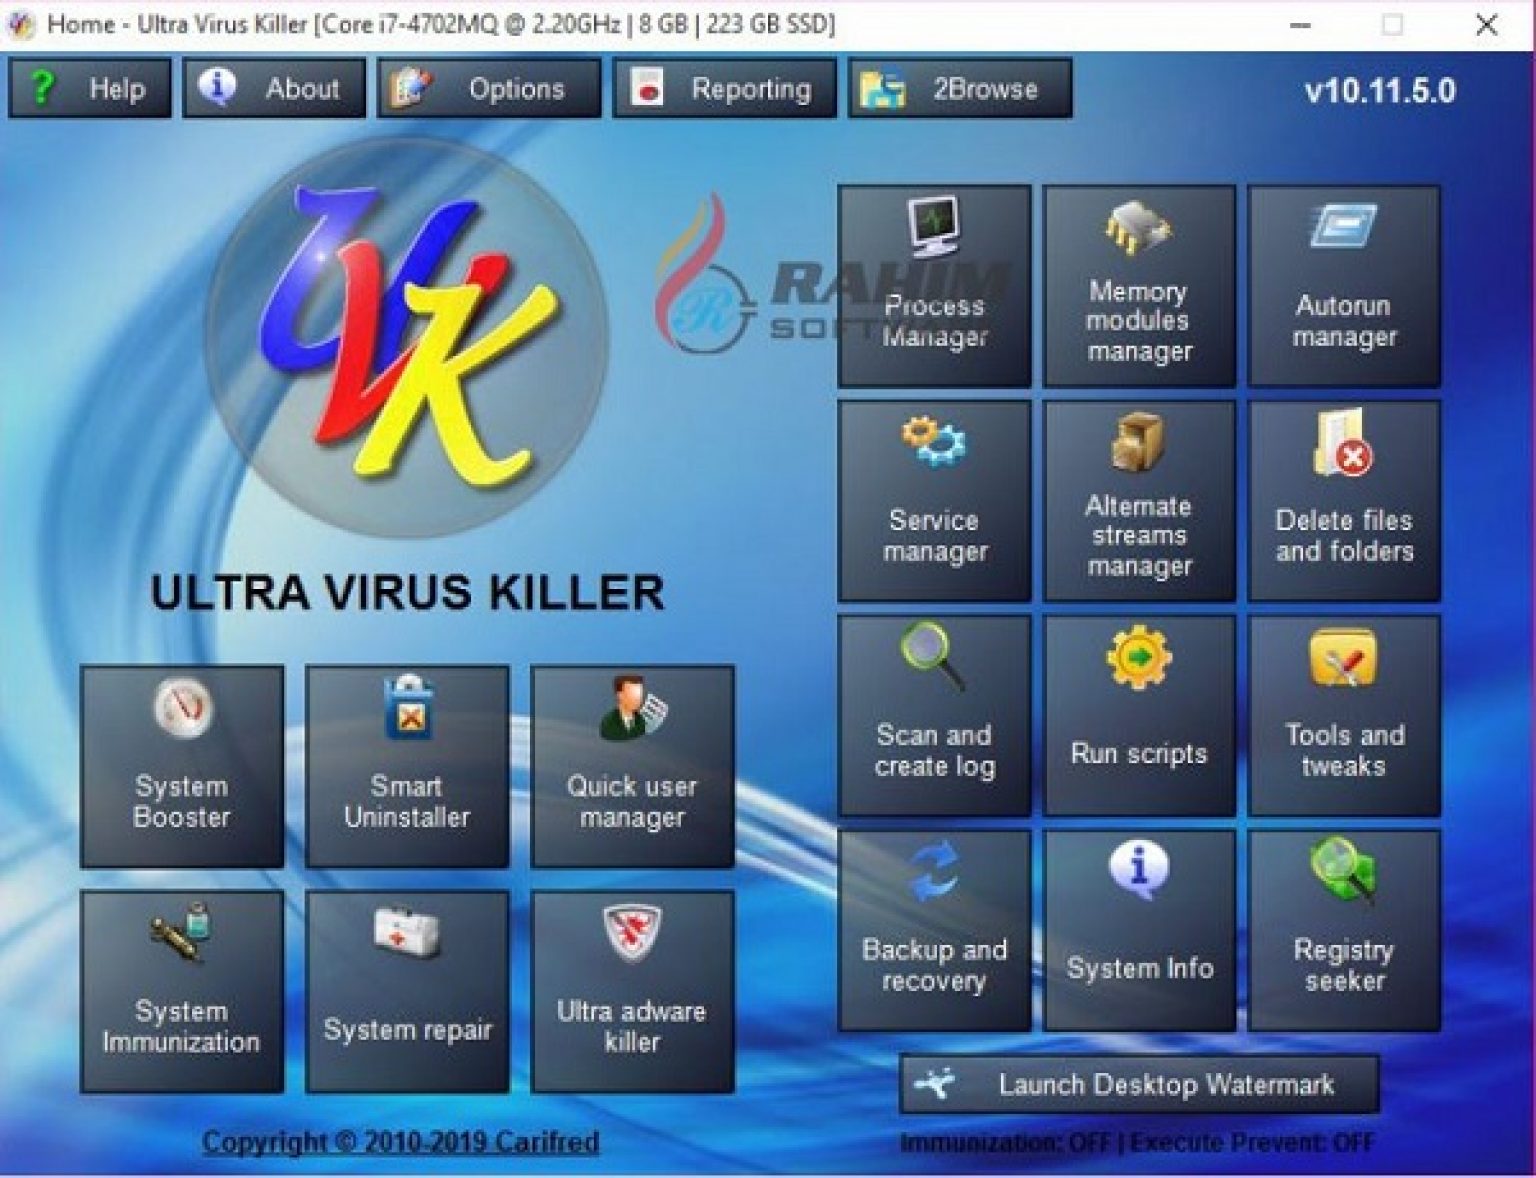 uvk ultra virus killer softpedia